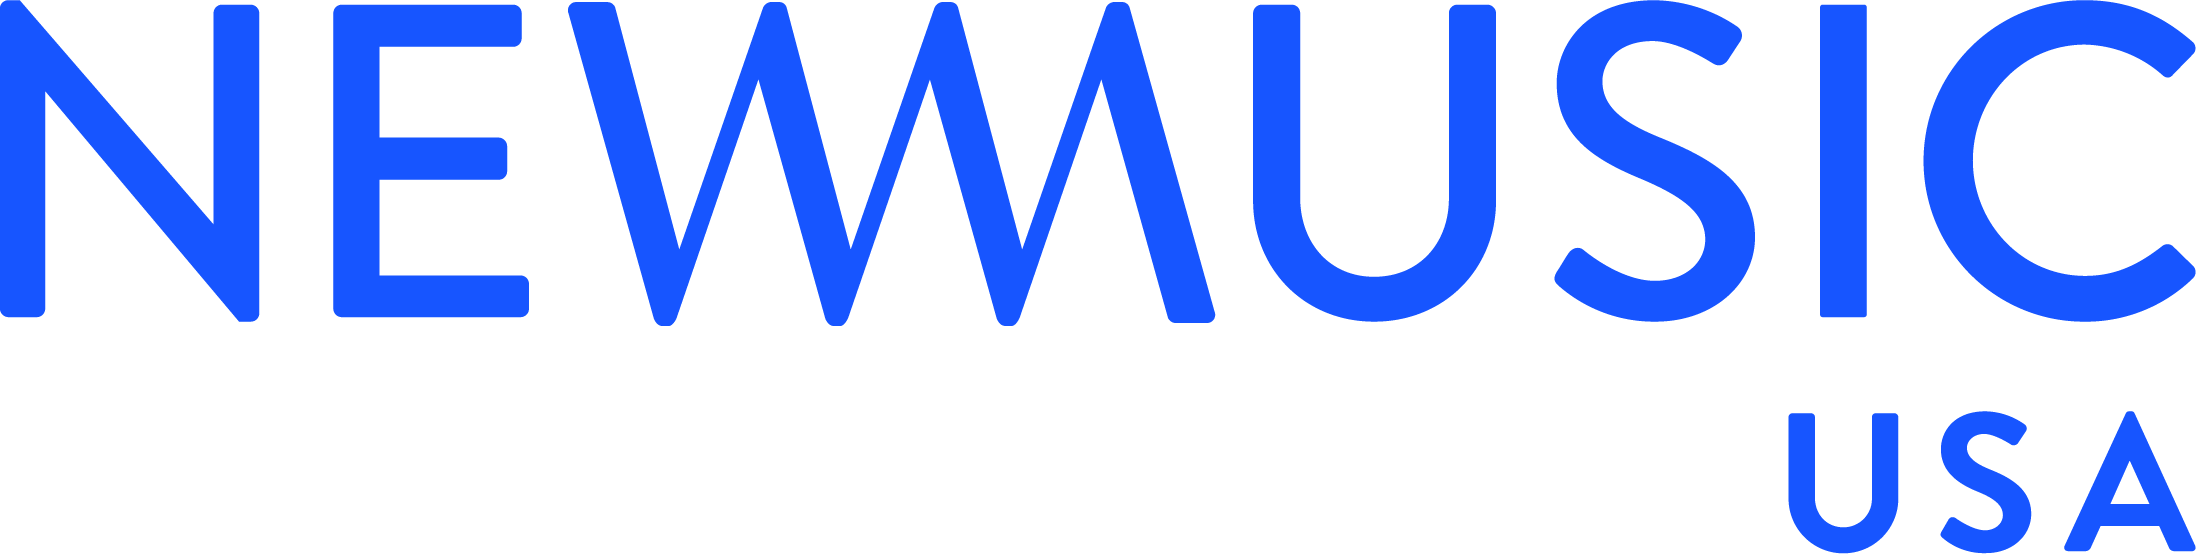 NMUSA-logo-blue.png